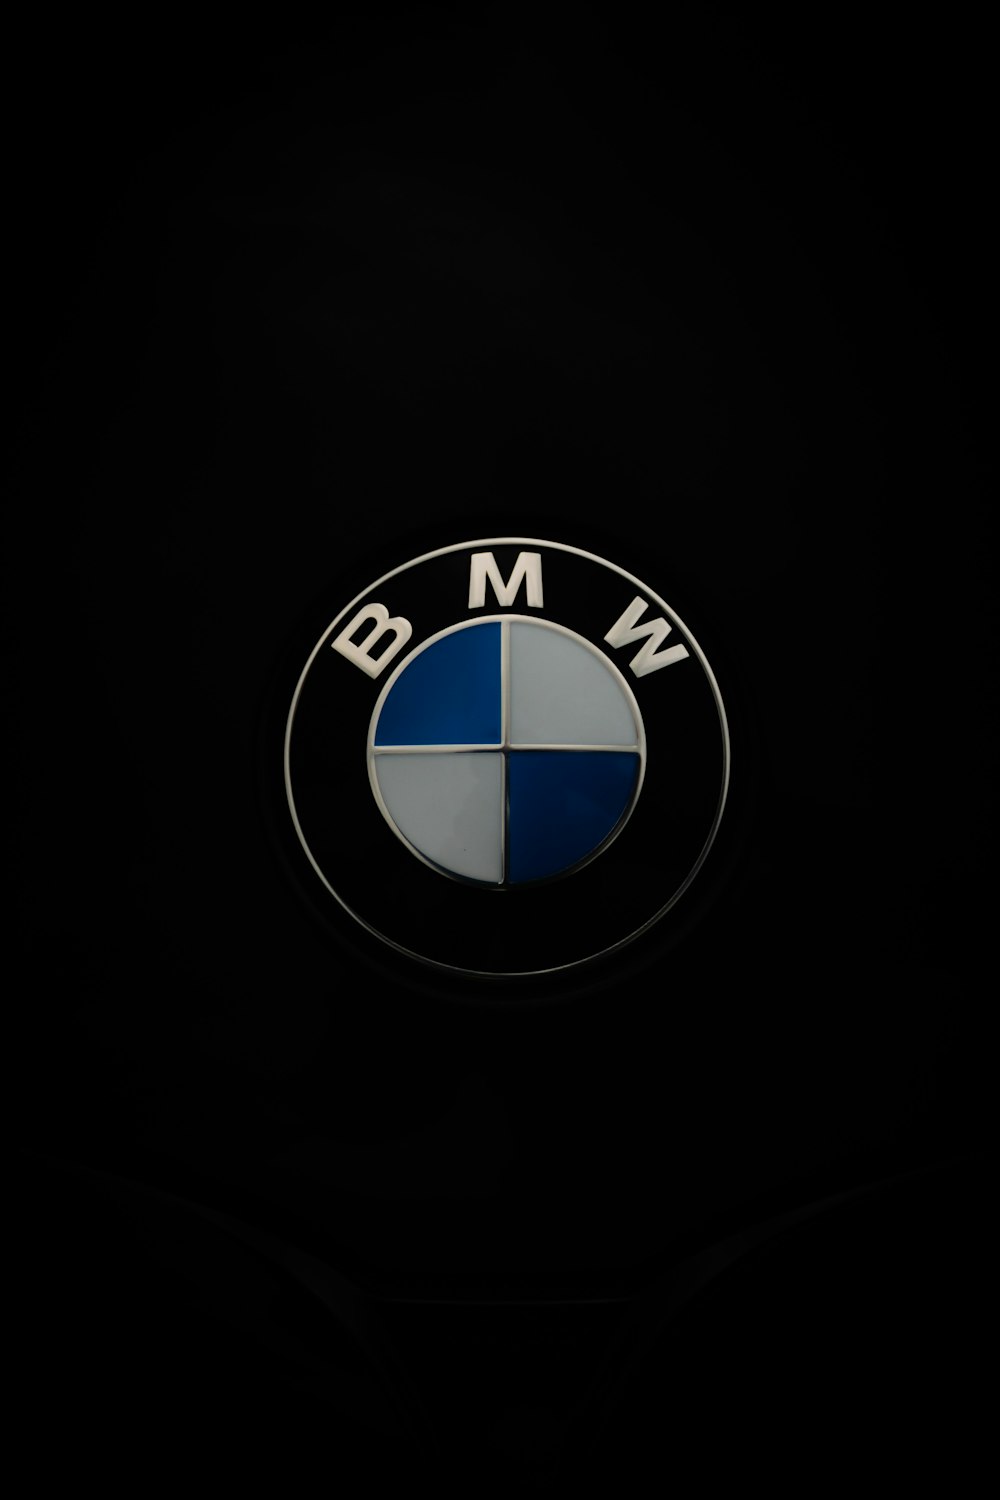 Details 200 bmw logo black background